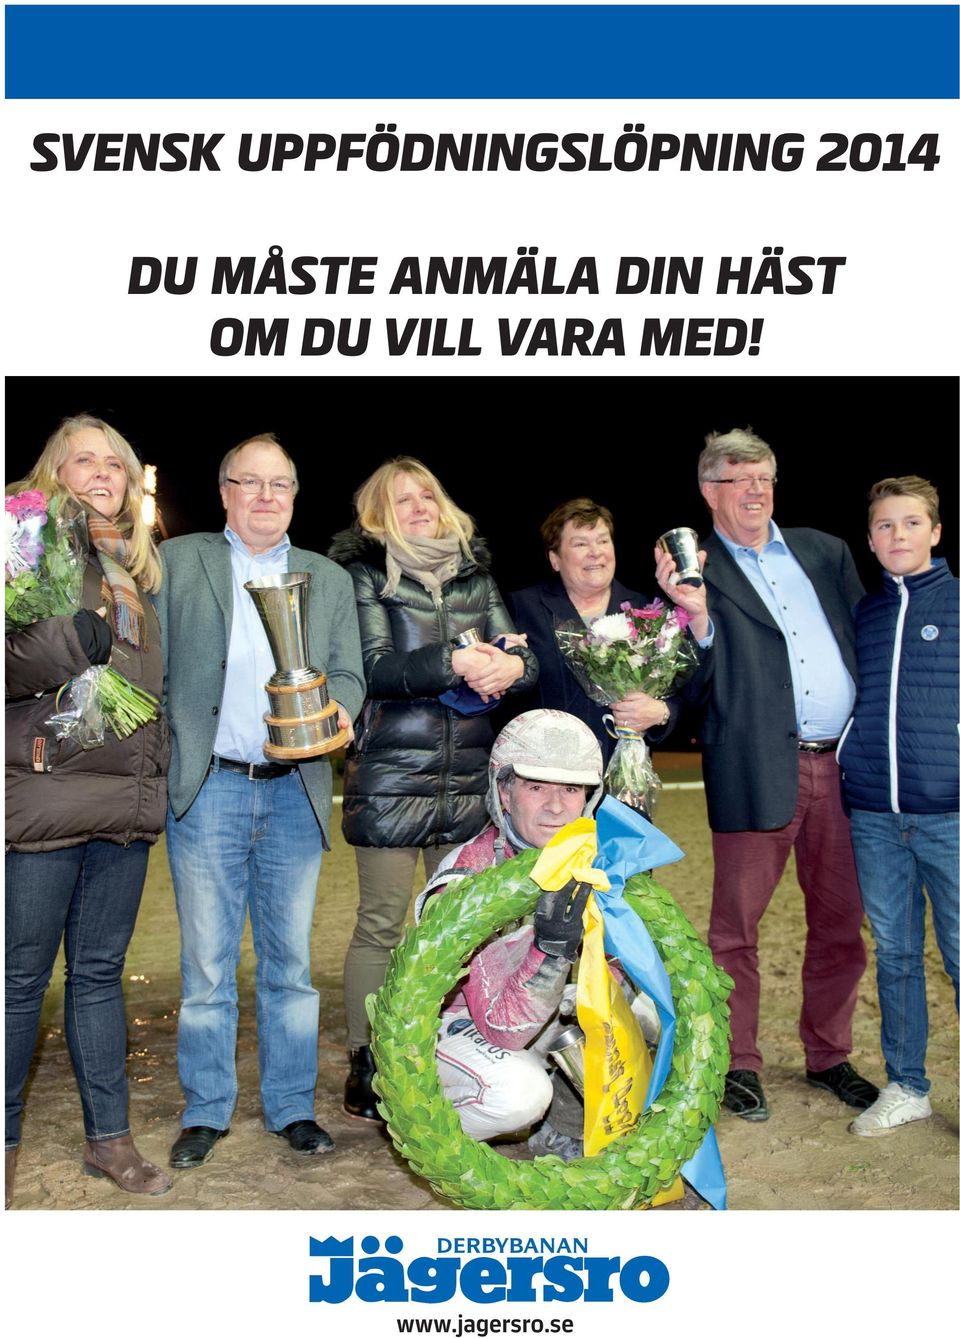 2014 DU MÅSTE ANMÄLA